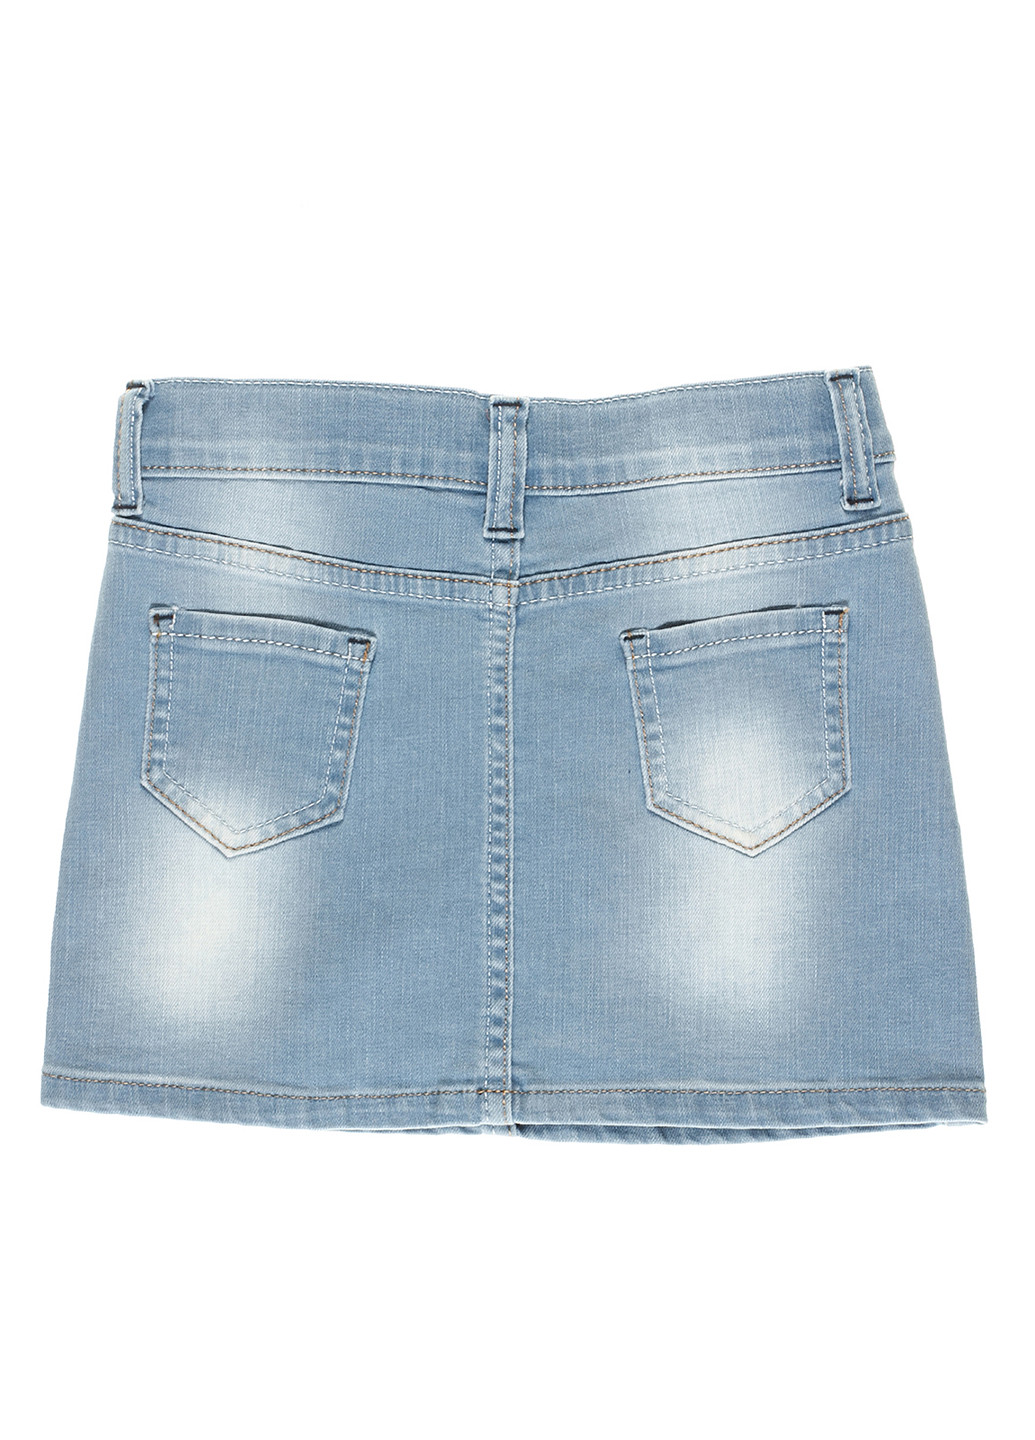 Голубая джинсовая с рисунком юбка Nasimo мини